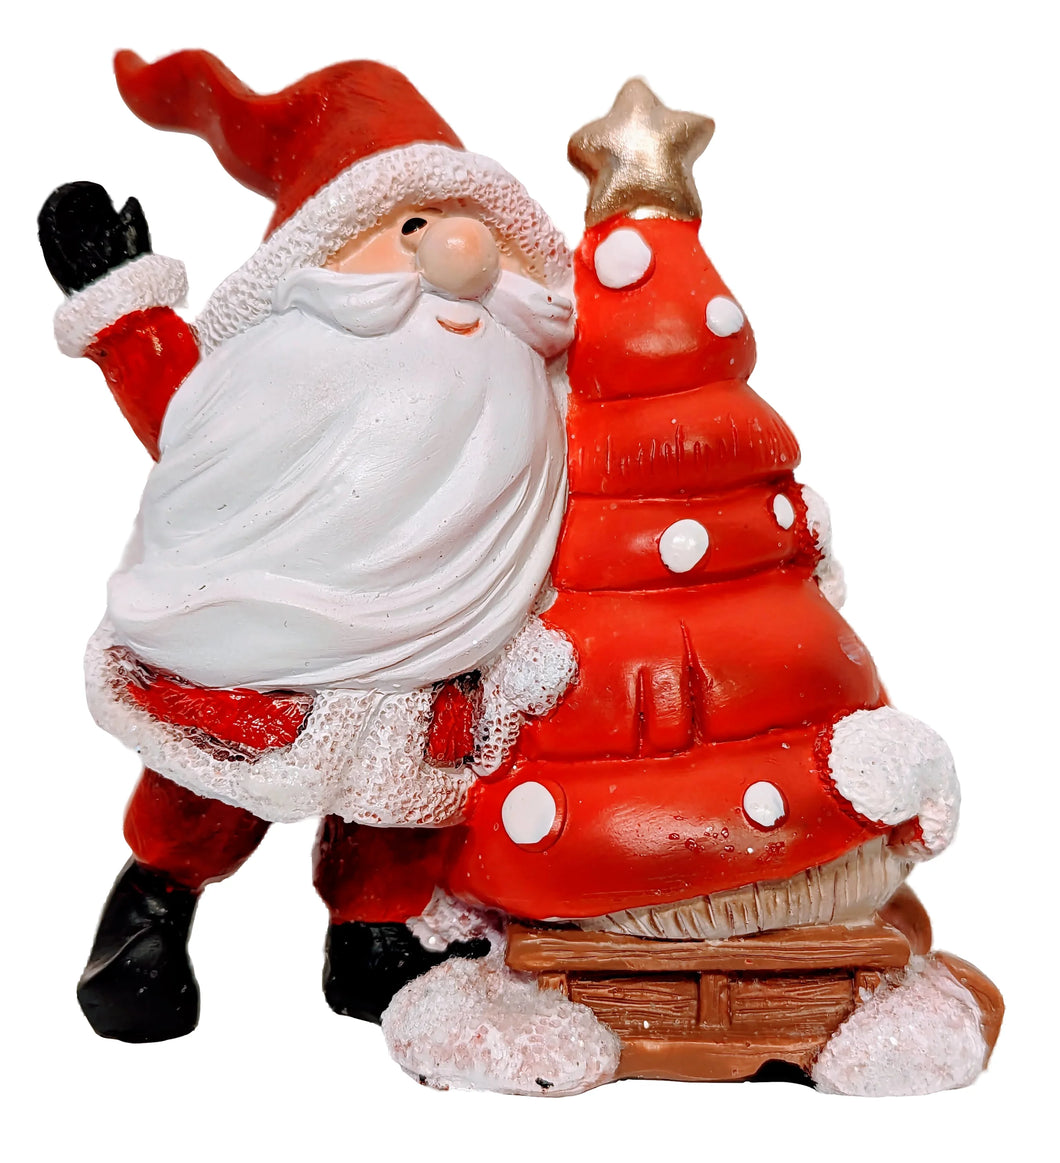 Santa Figurine with Christmas Tree on Sled